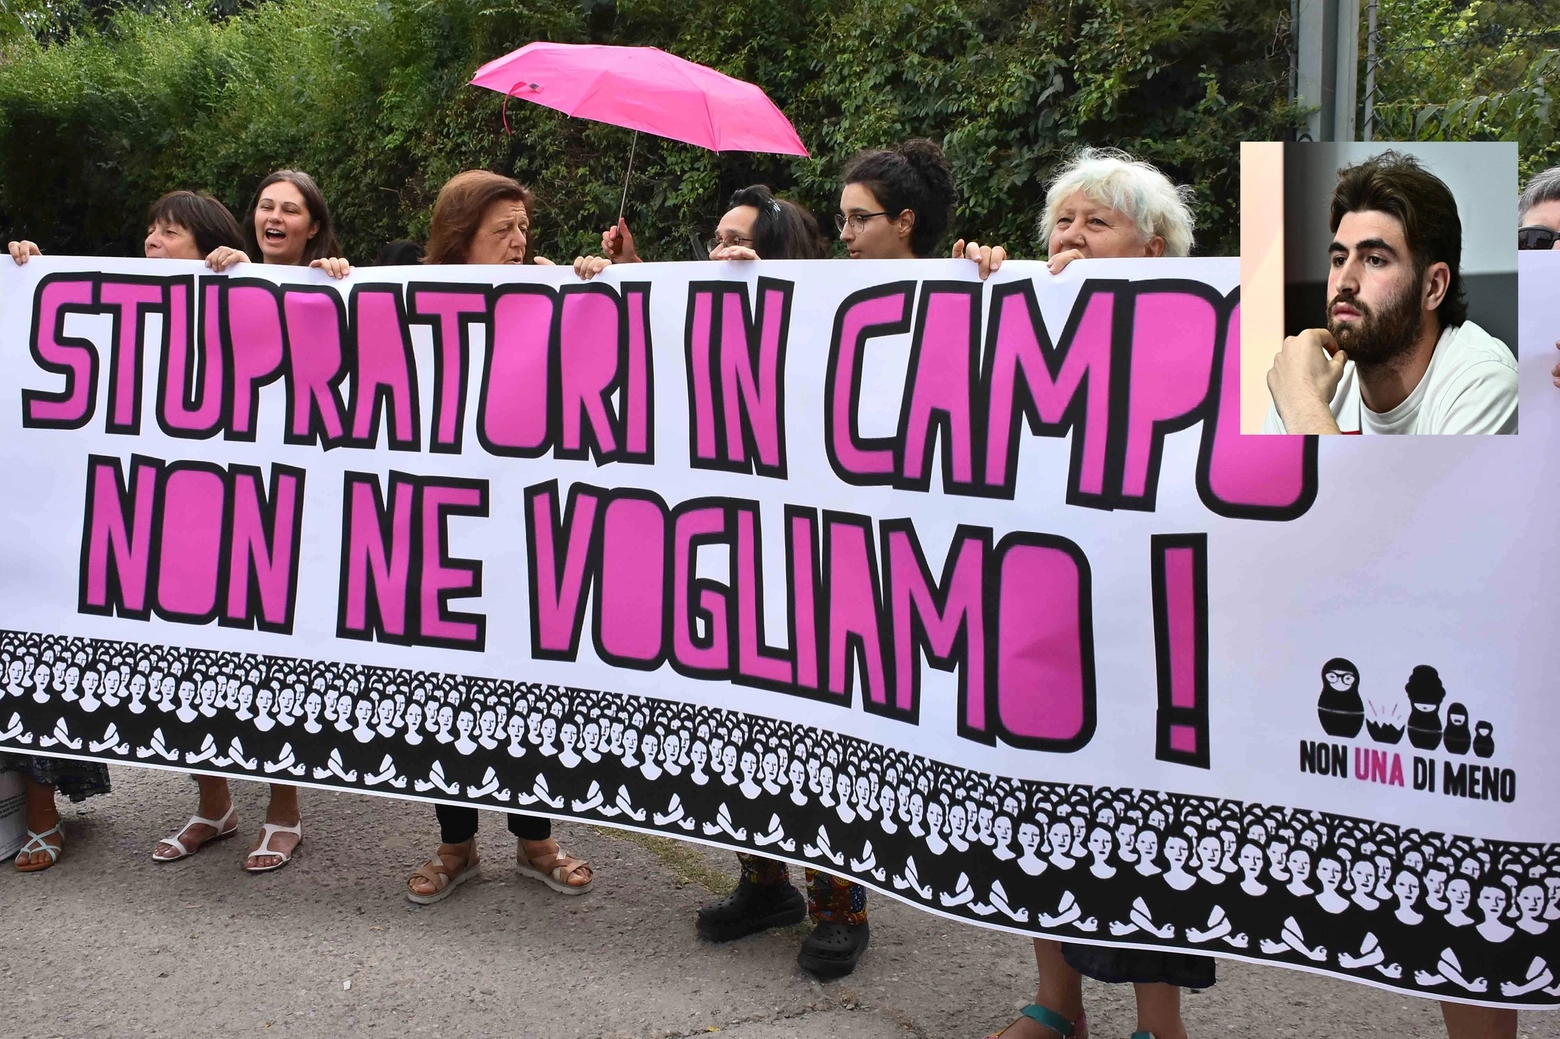 Manolo Portanova (nel riquadro) e la manifestazione delle donne contro il suo ingaggio nella Reggiana dopo la condanna in primo grado per stupro